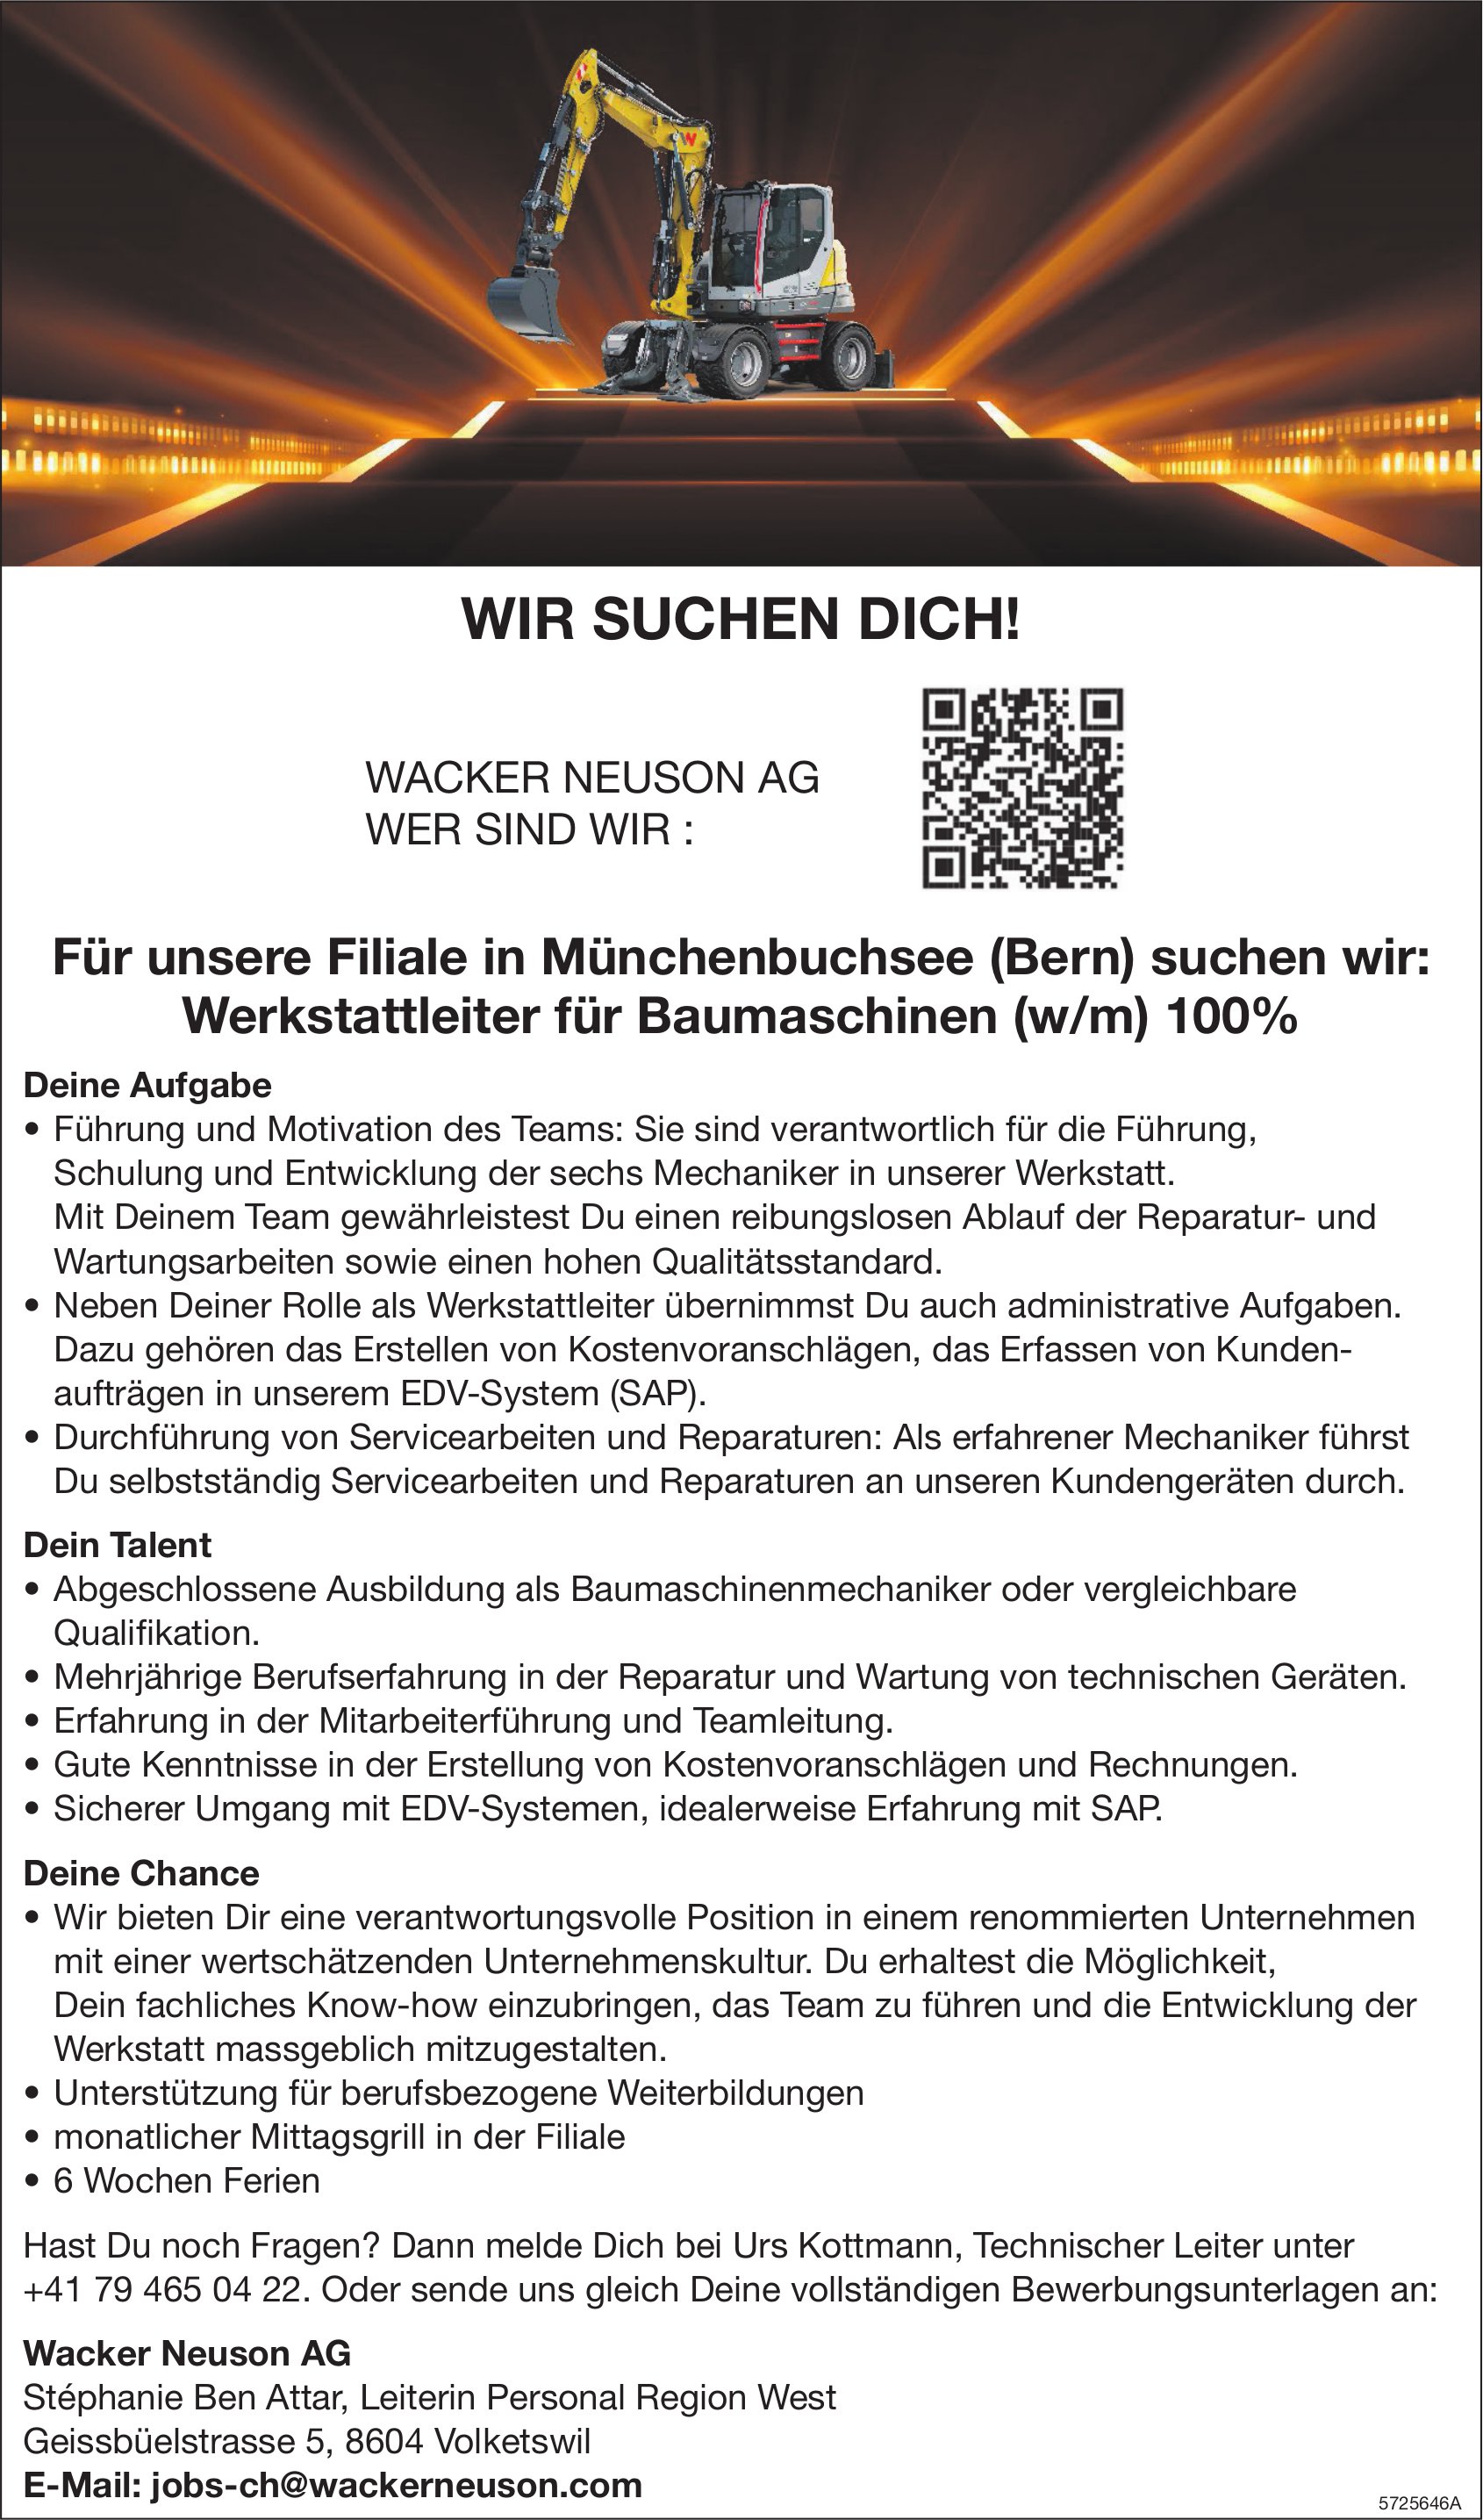 Für unsere Filiale in Münchenbuchsee (Bern) suchen wir: Werkstattleiter für Baumaschinen (w/m) 100%, Wacker Neuson AG, Volketswil